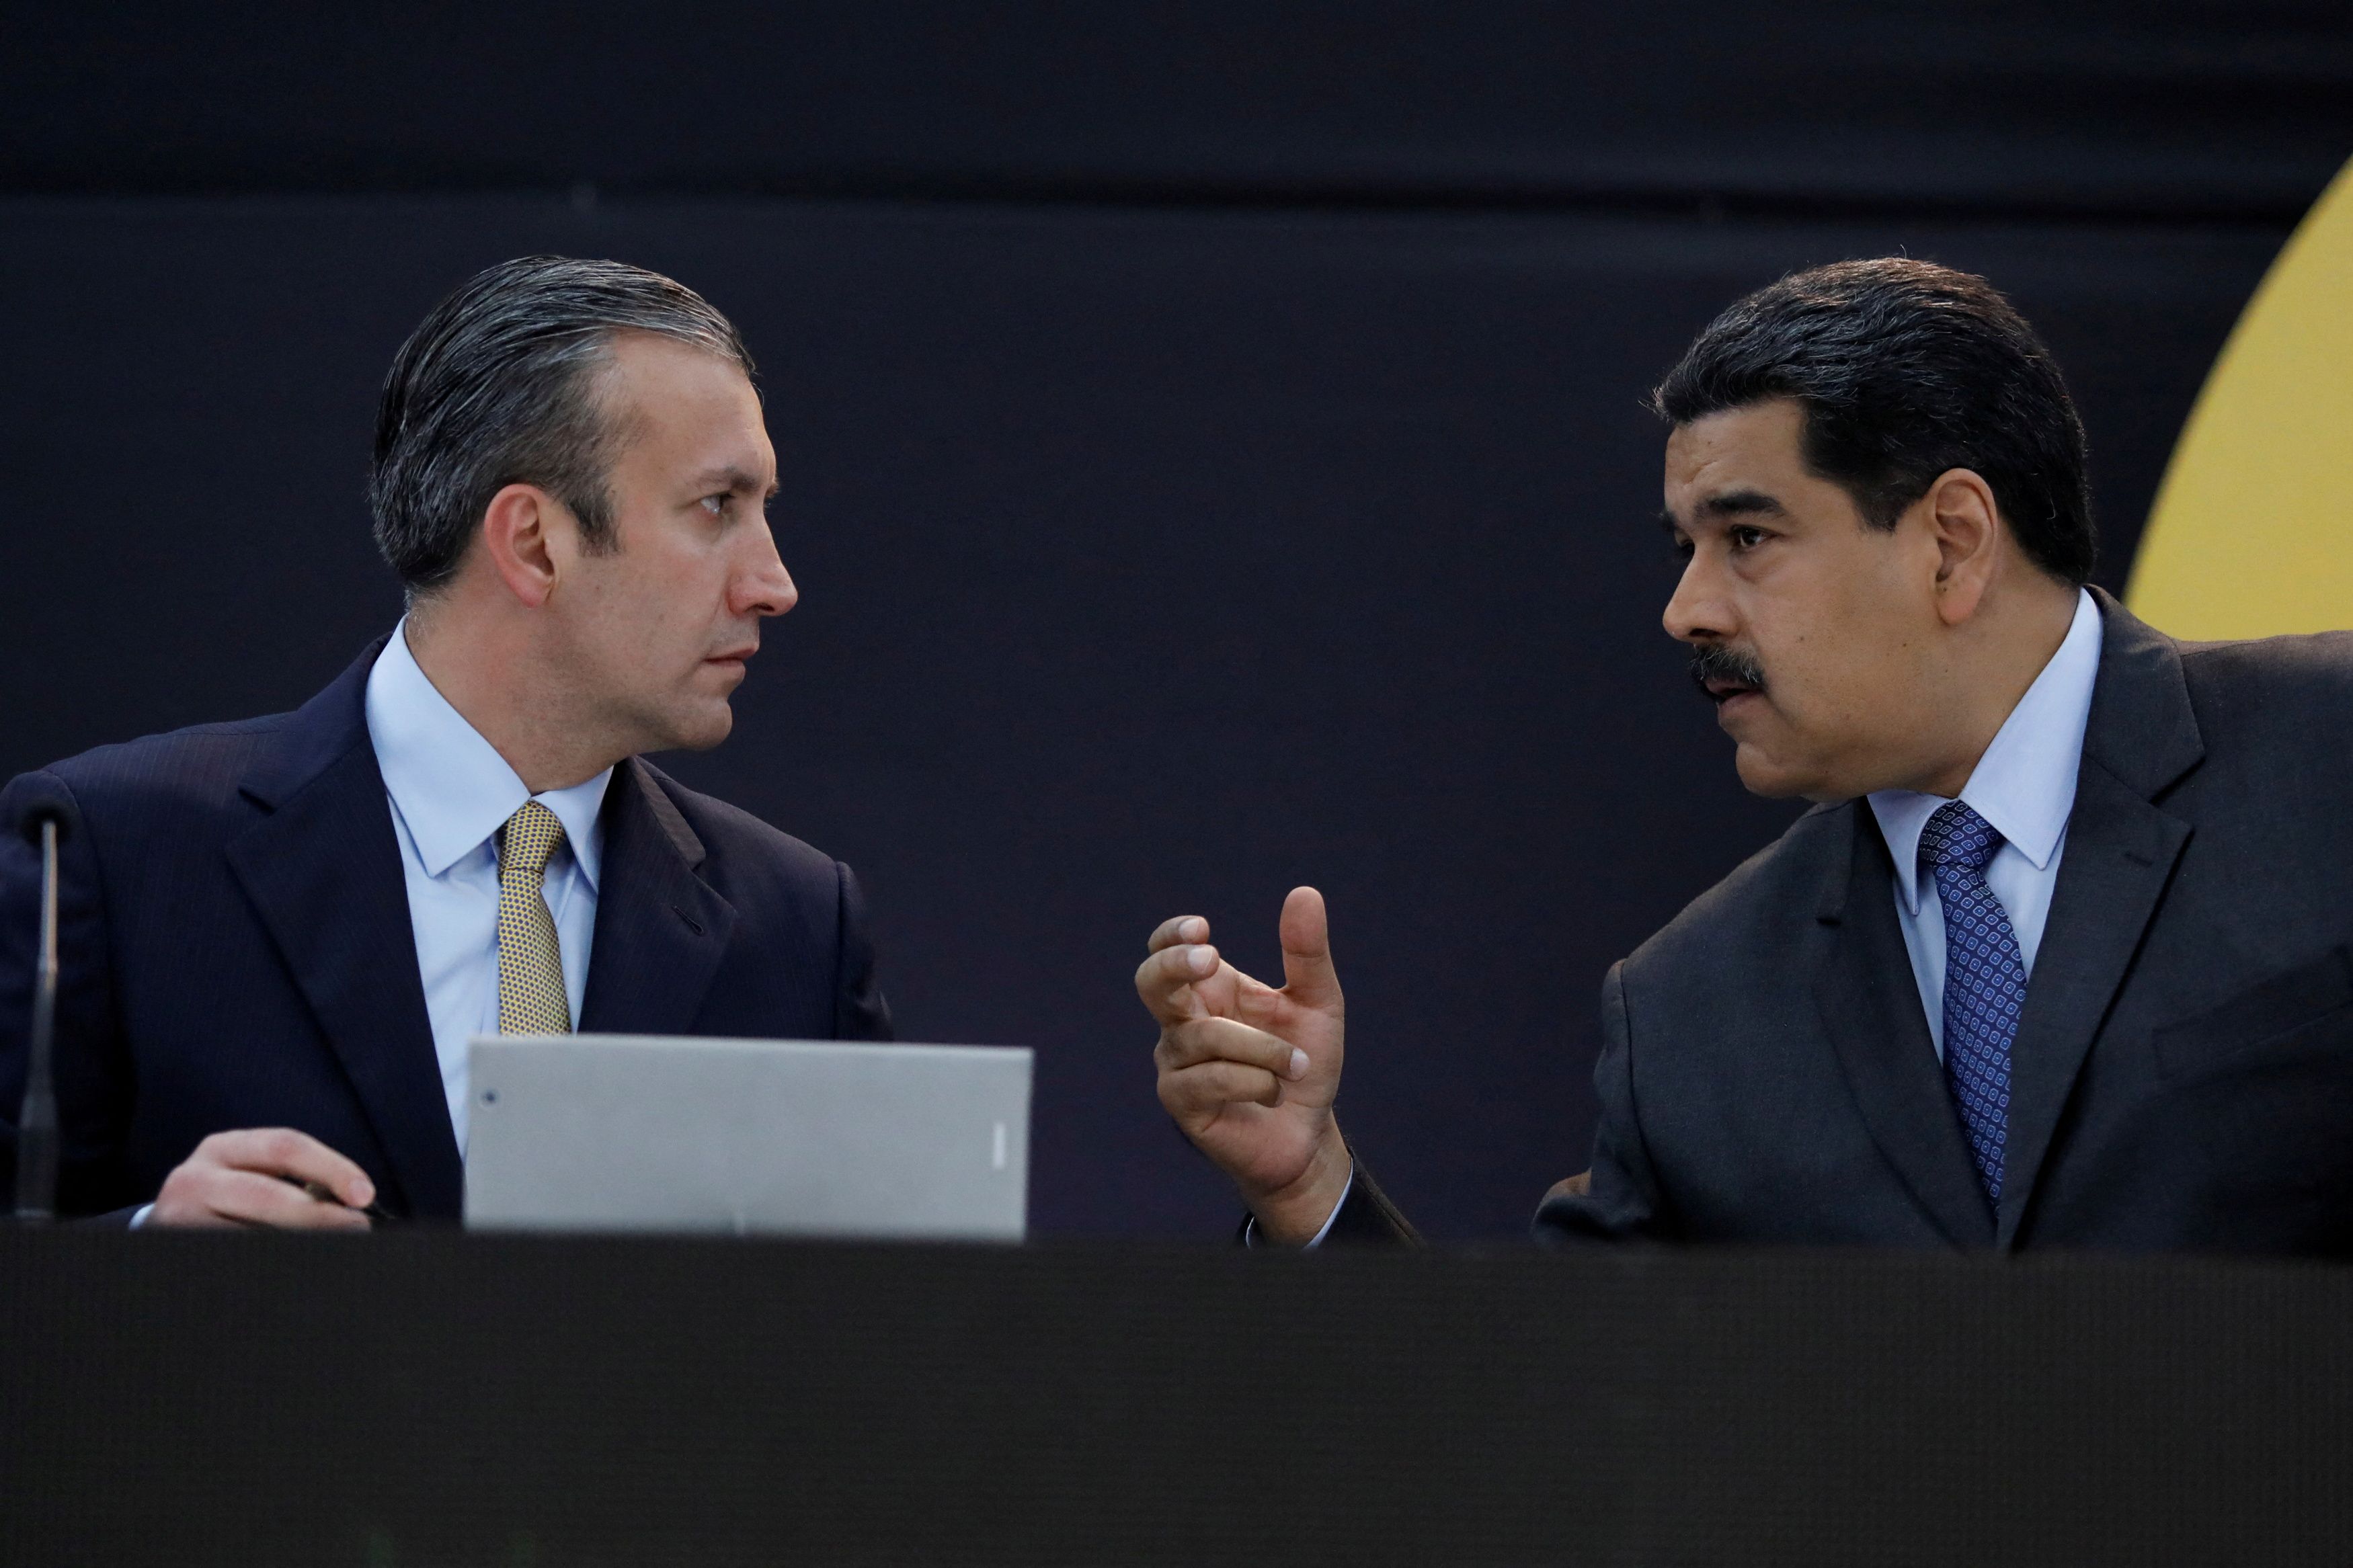 Tareck El Aissami declaró que renunció el 20 de marzo al cargo de ministro de Petróleo de Venezuela “en virtud de las investigaciones que se han iniciado sobre graves hechos de corrupción en PDVSA” (REUTERS/Marco Bello)